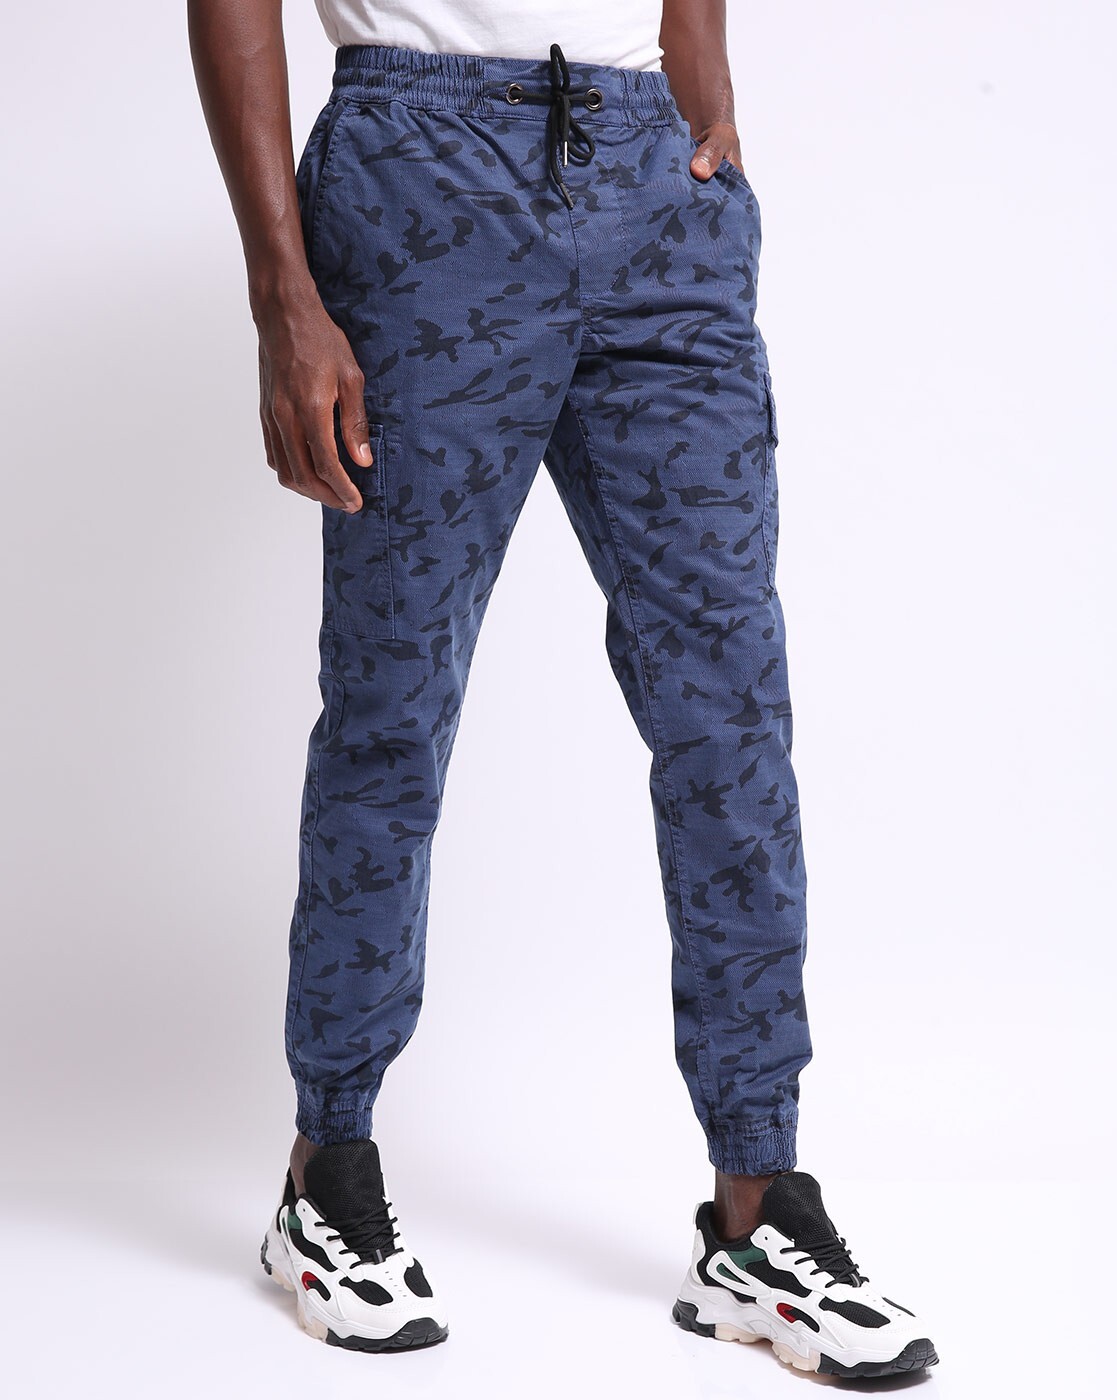 Blue Camo Pocket Detail Cargo Trousers  Camo pants outfit Camo outfits  Cargo pants outfit